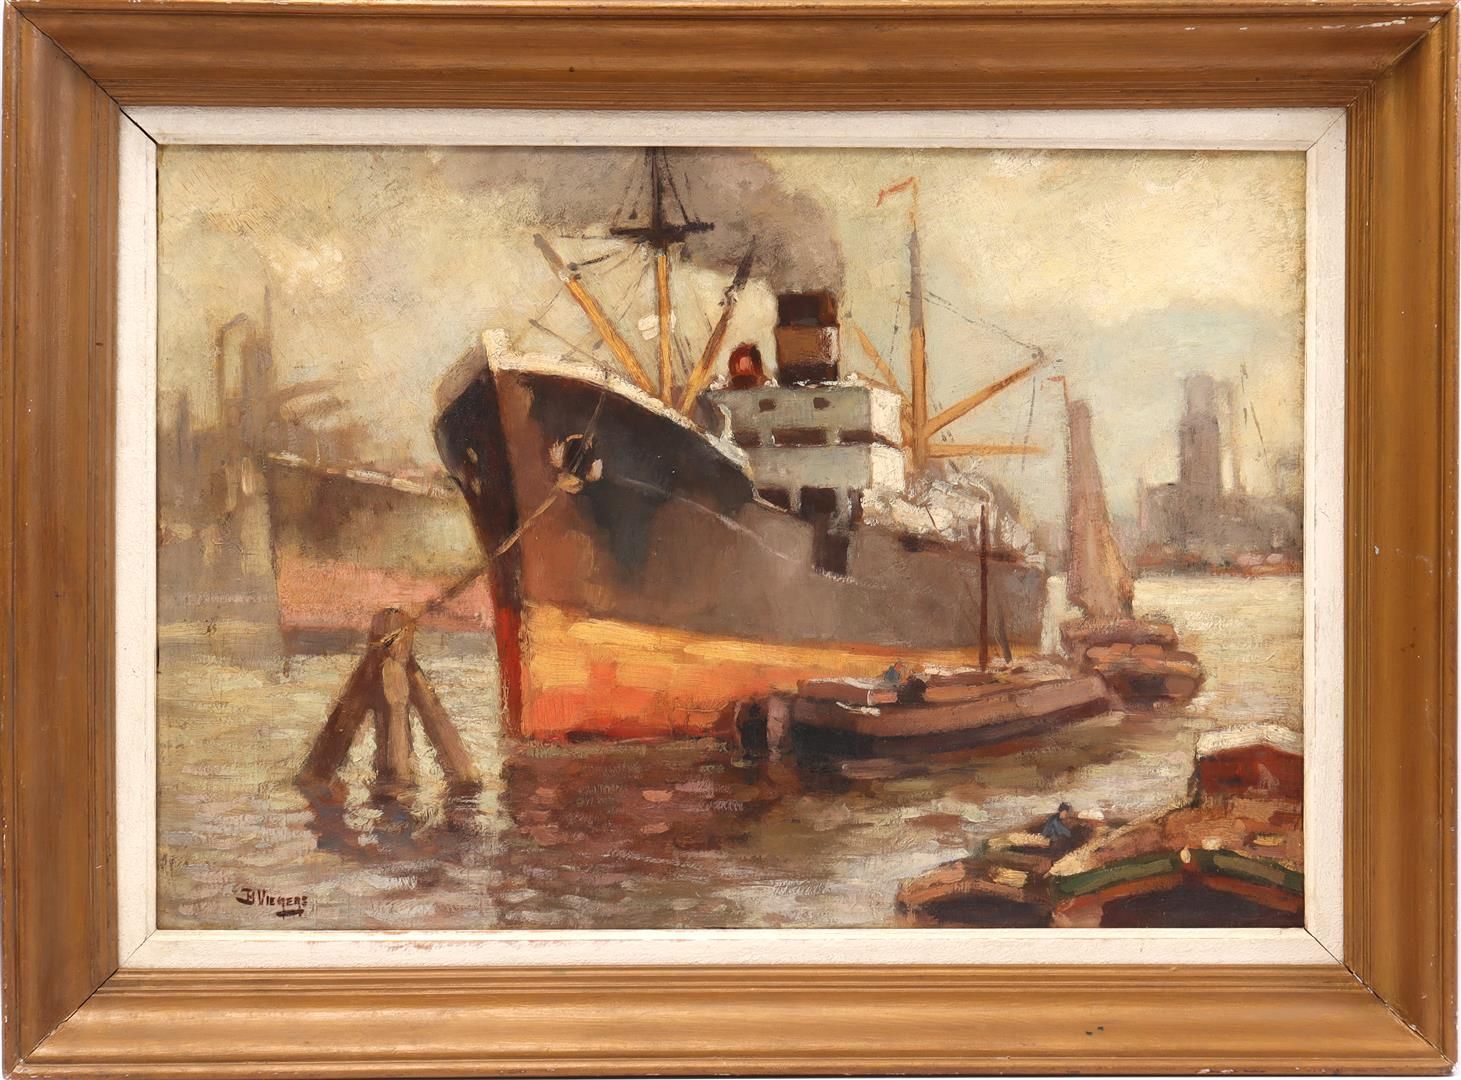 Ben Viegers Ben Viegers (1886-1947)

Schiffe im Hafen, Tafel 51x74 cm